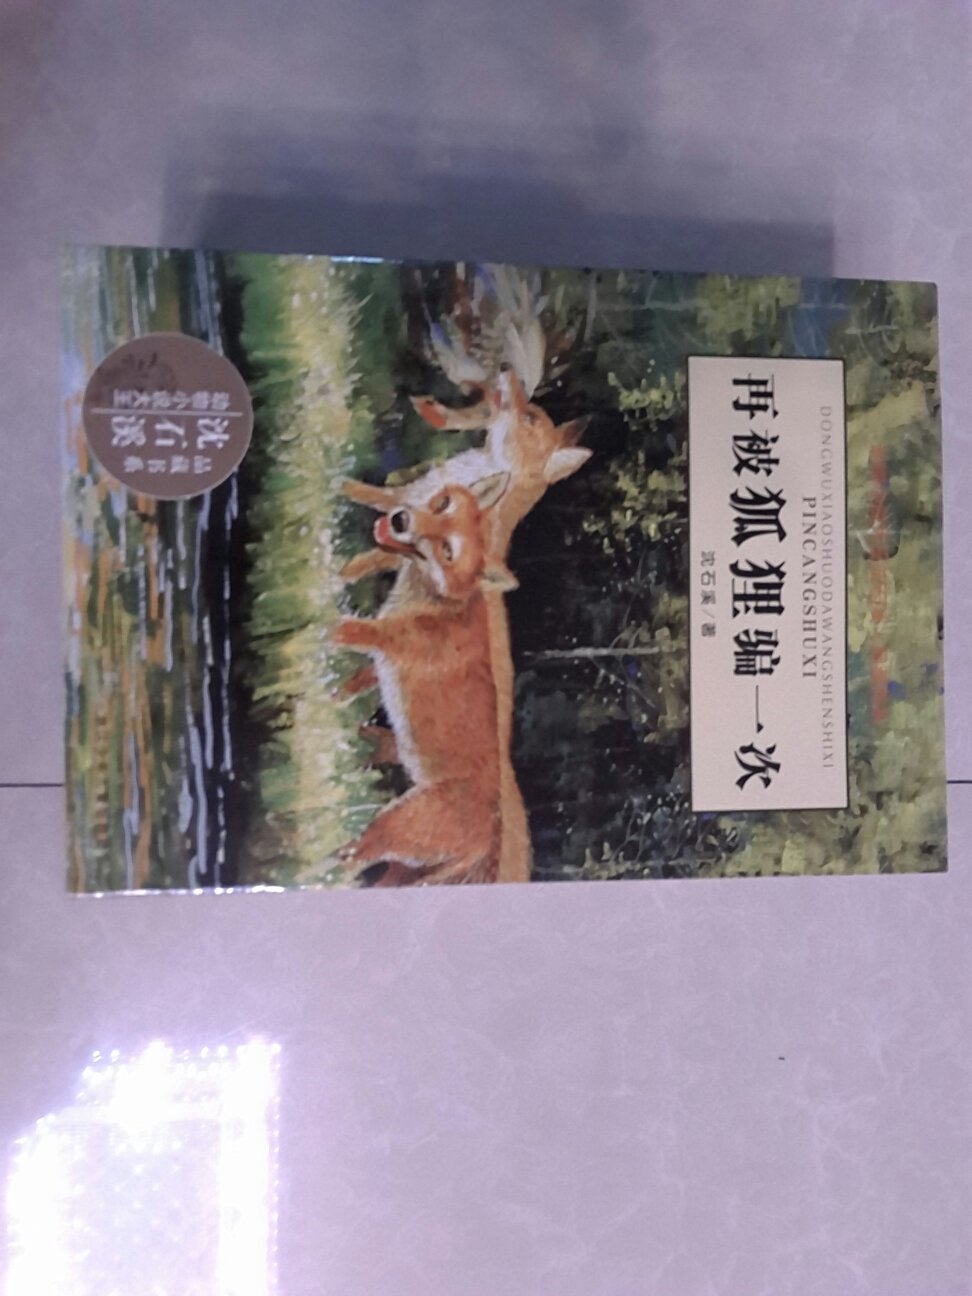 很喜欢沈石溪的动物小说，大人小孩都适合阅读